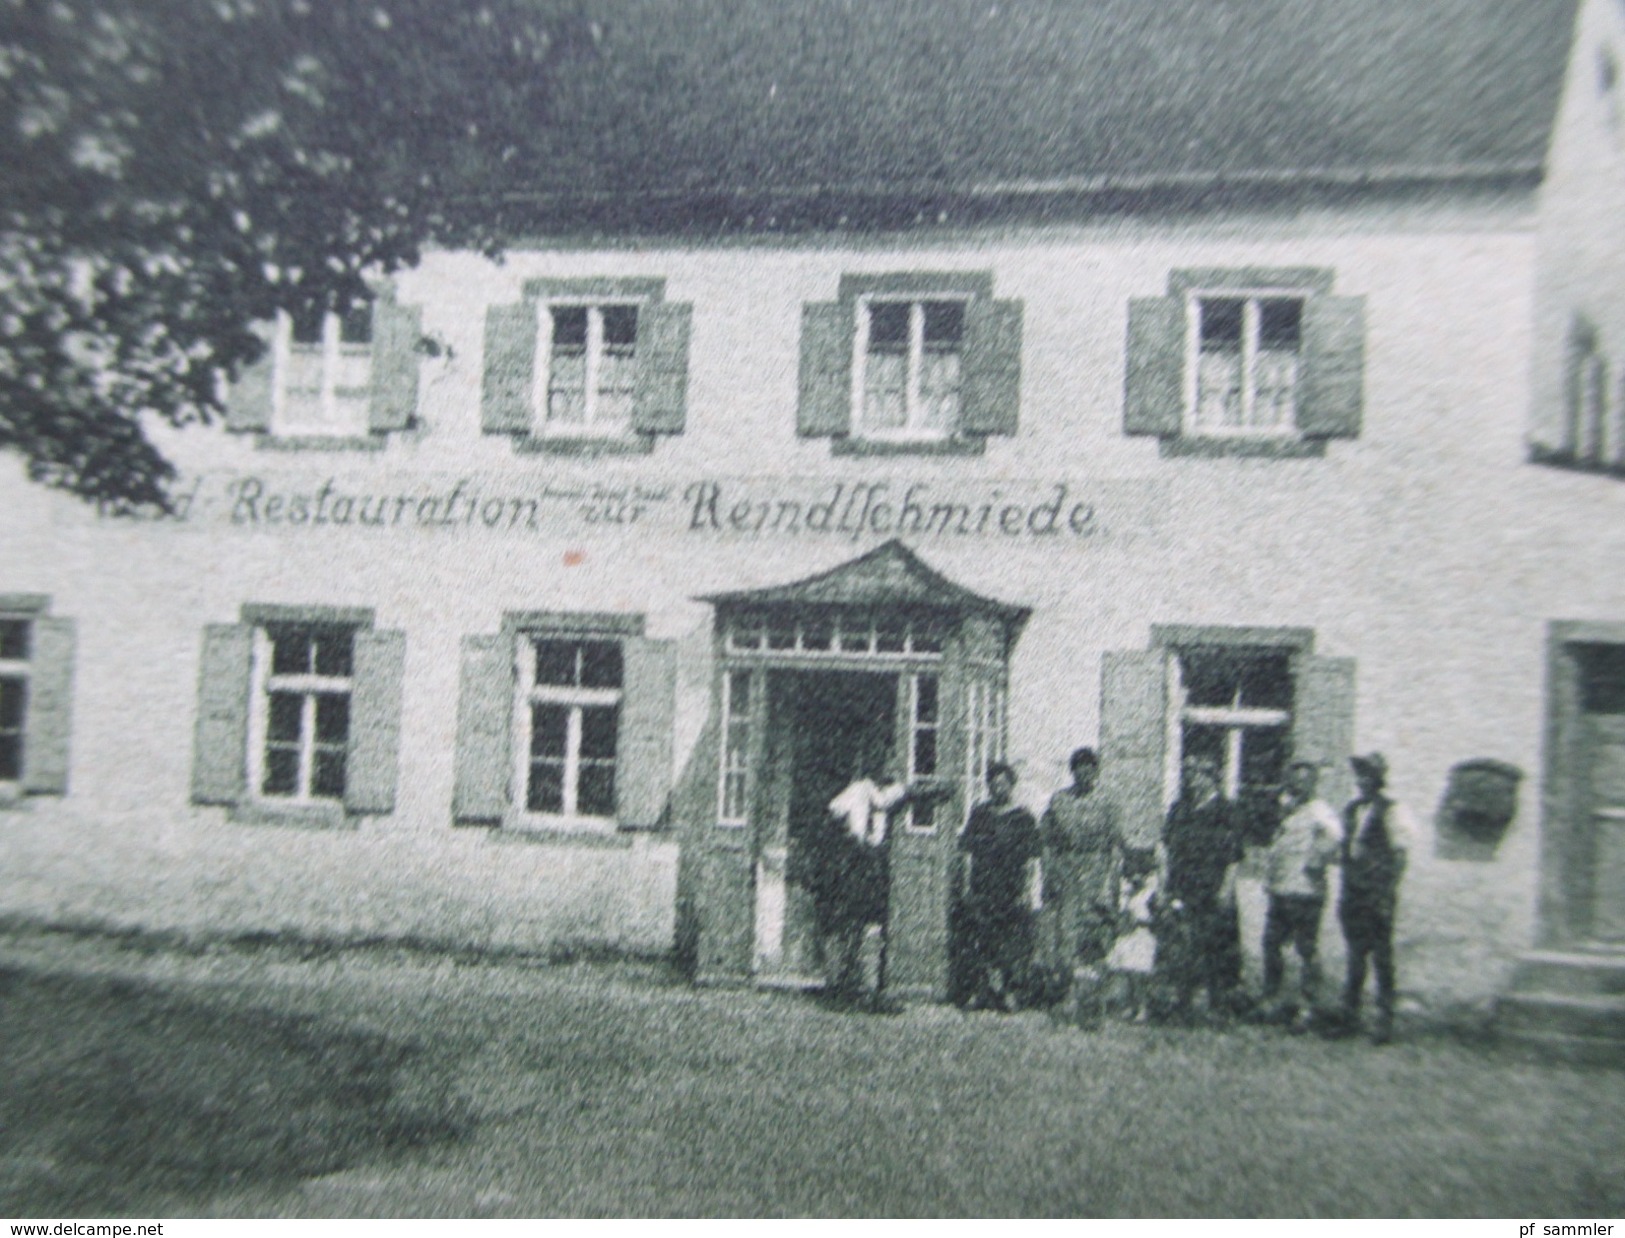 AK 1929 Waldrestauration Zur Reindlschmiede Bei Bad Heilbrunn. Gasthof / Restaurant. - Bad Toelz